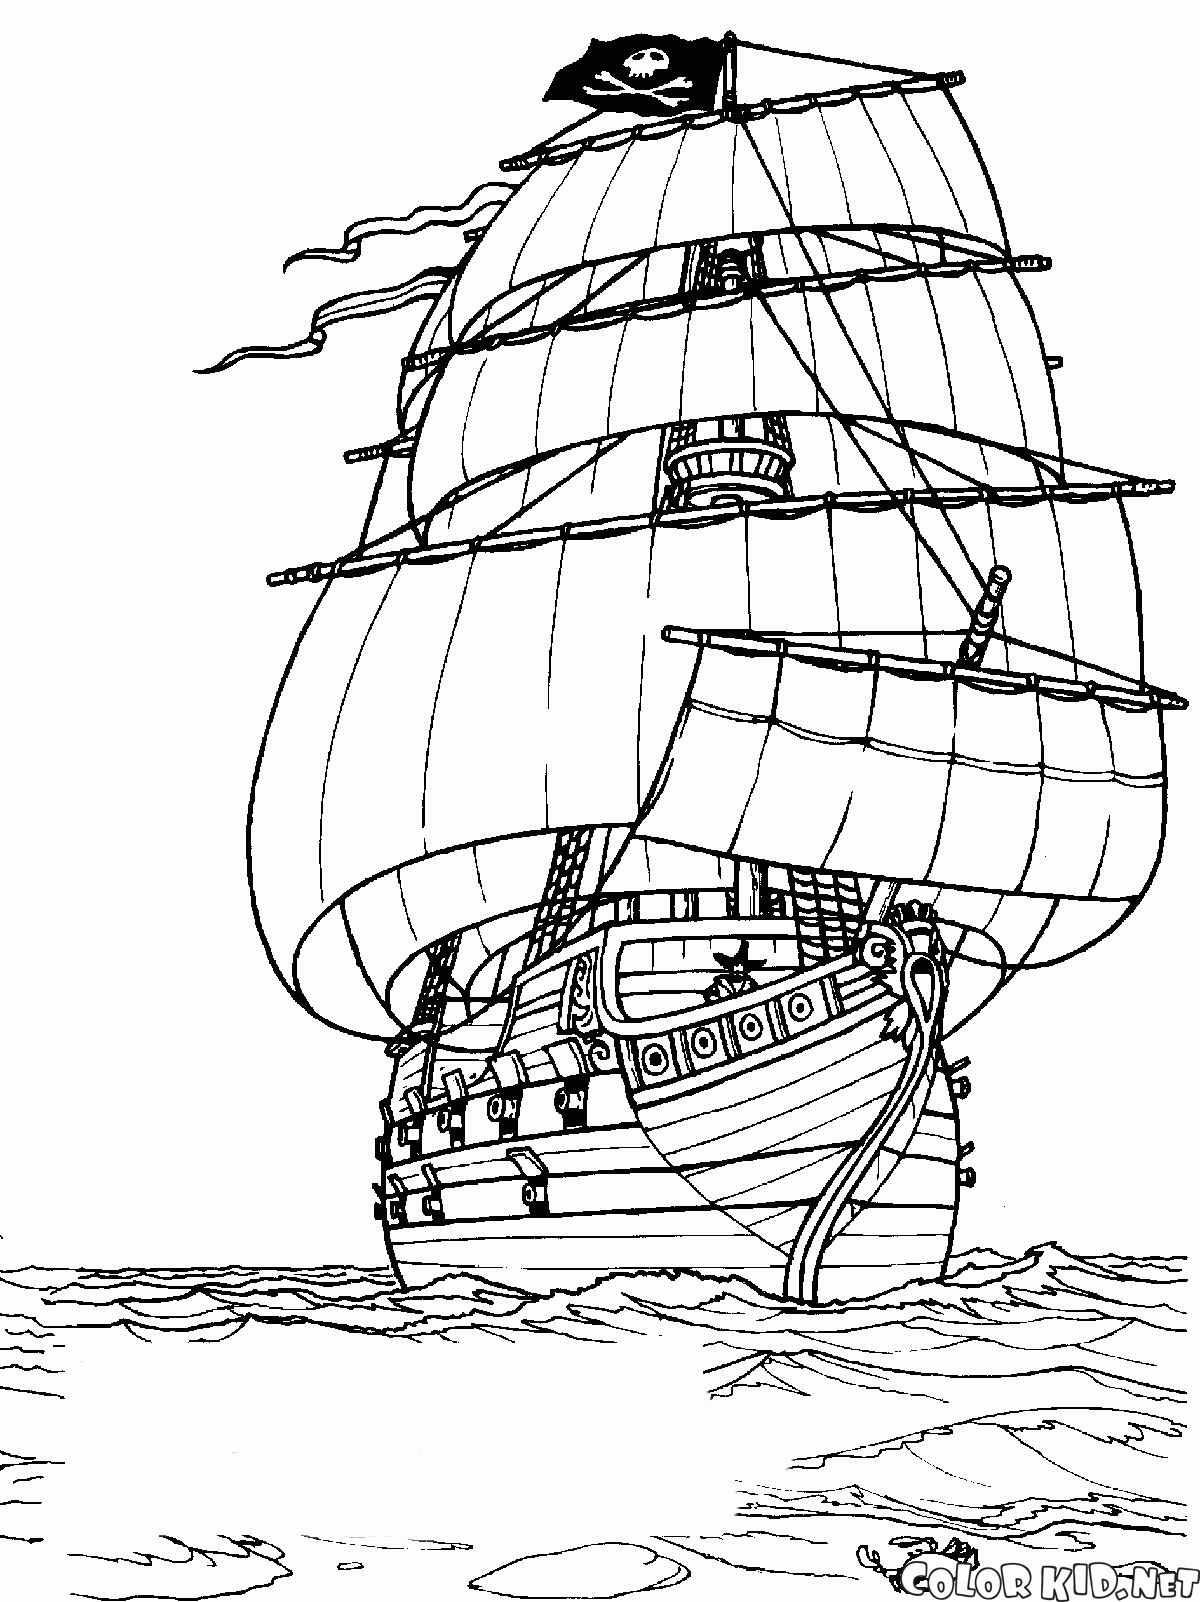 A ship at sea